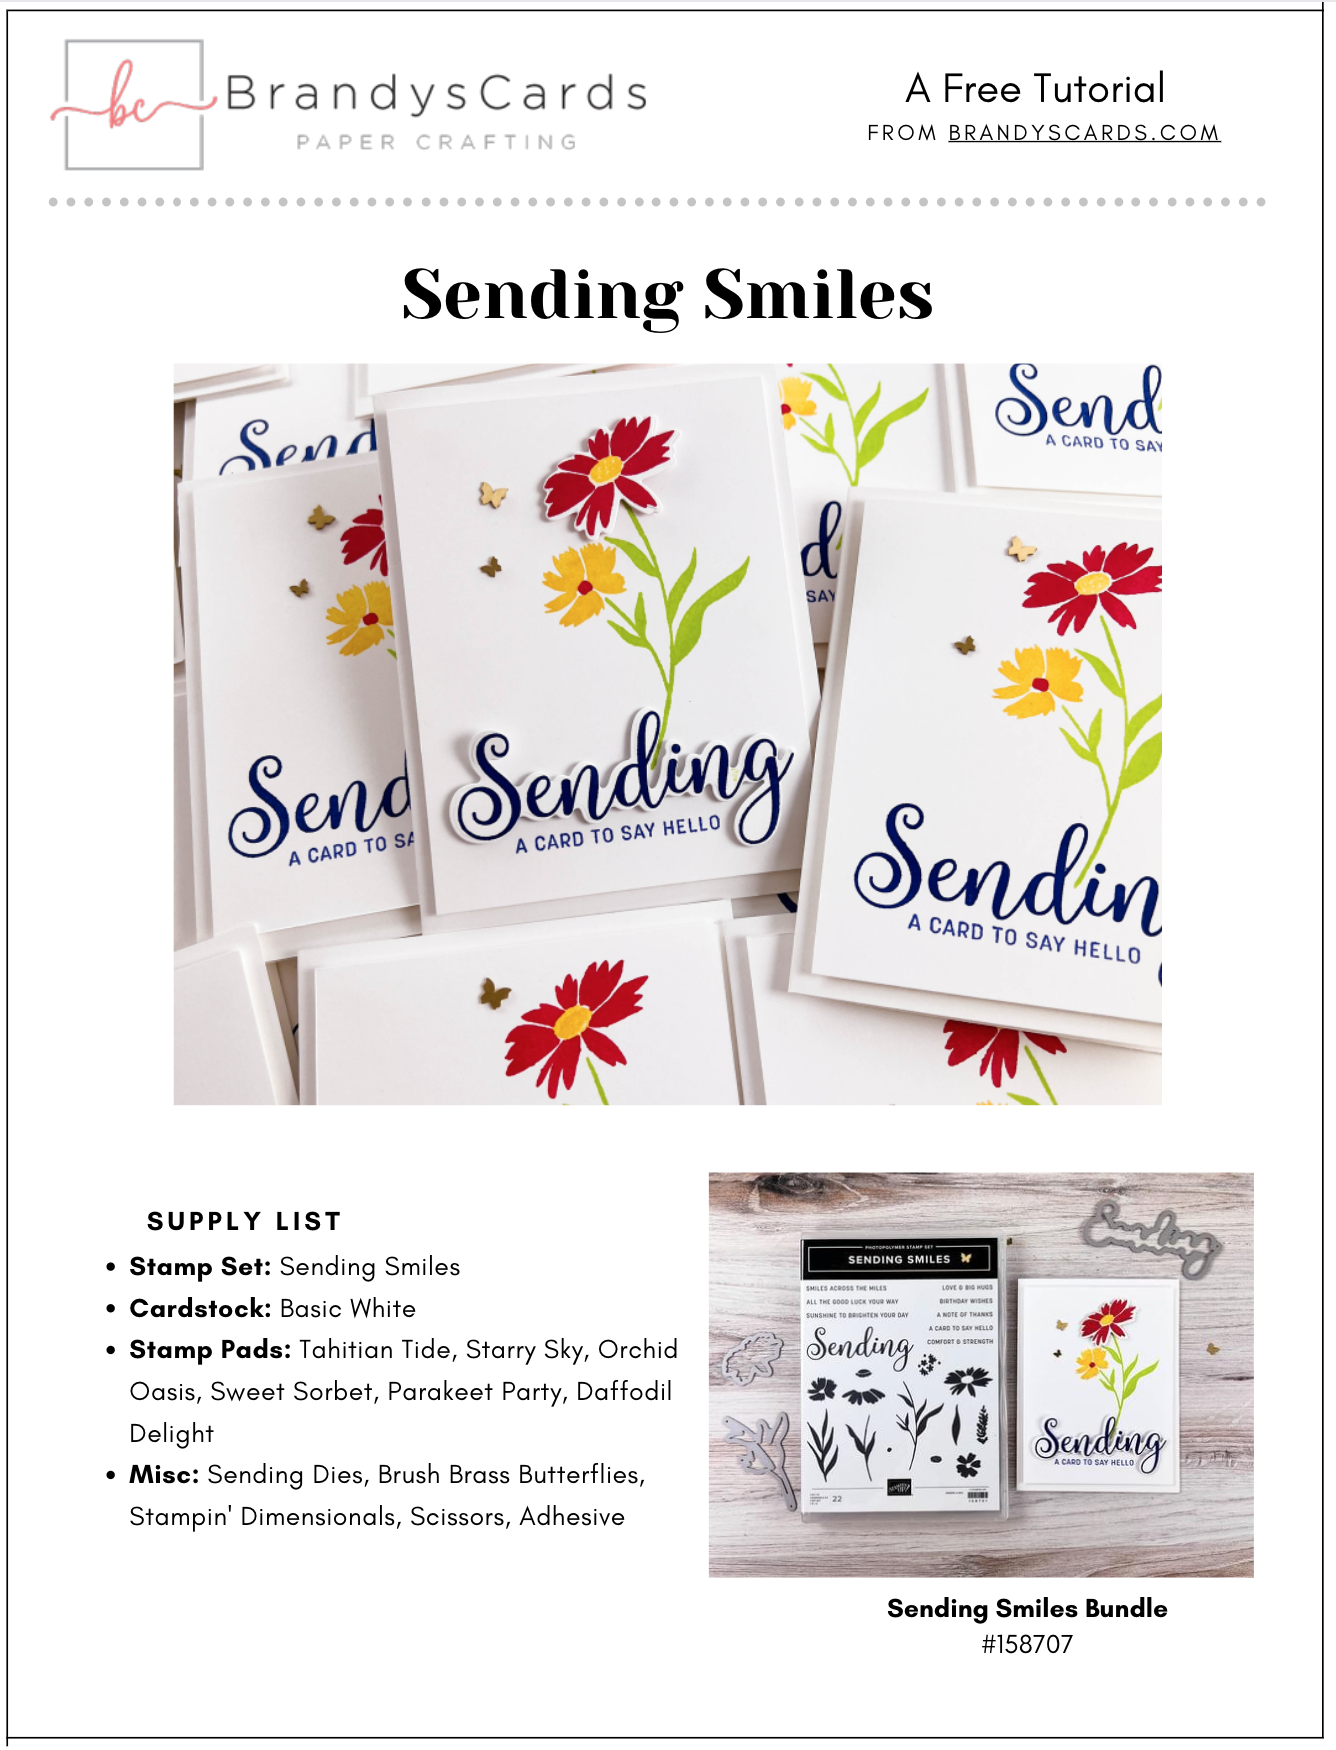 Sending-Smiles-Stampin-Up-Card-tutorial-Free